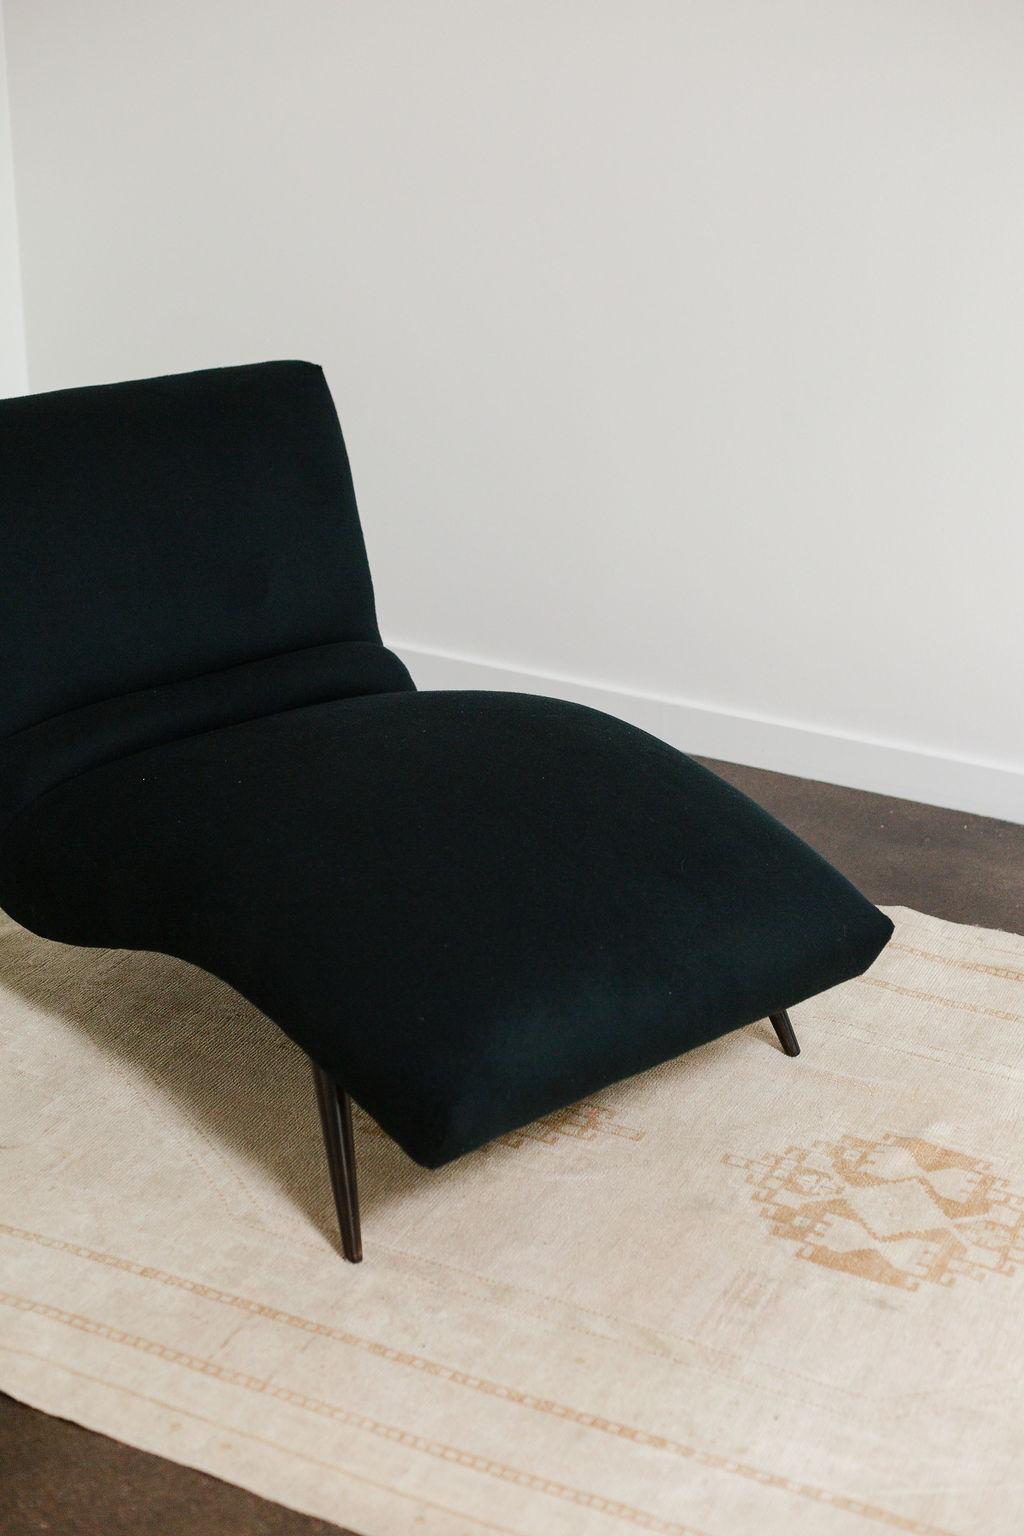 contour chaise lounge